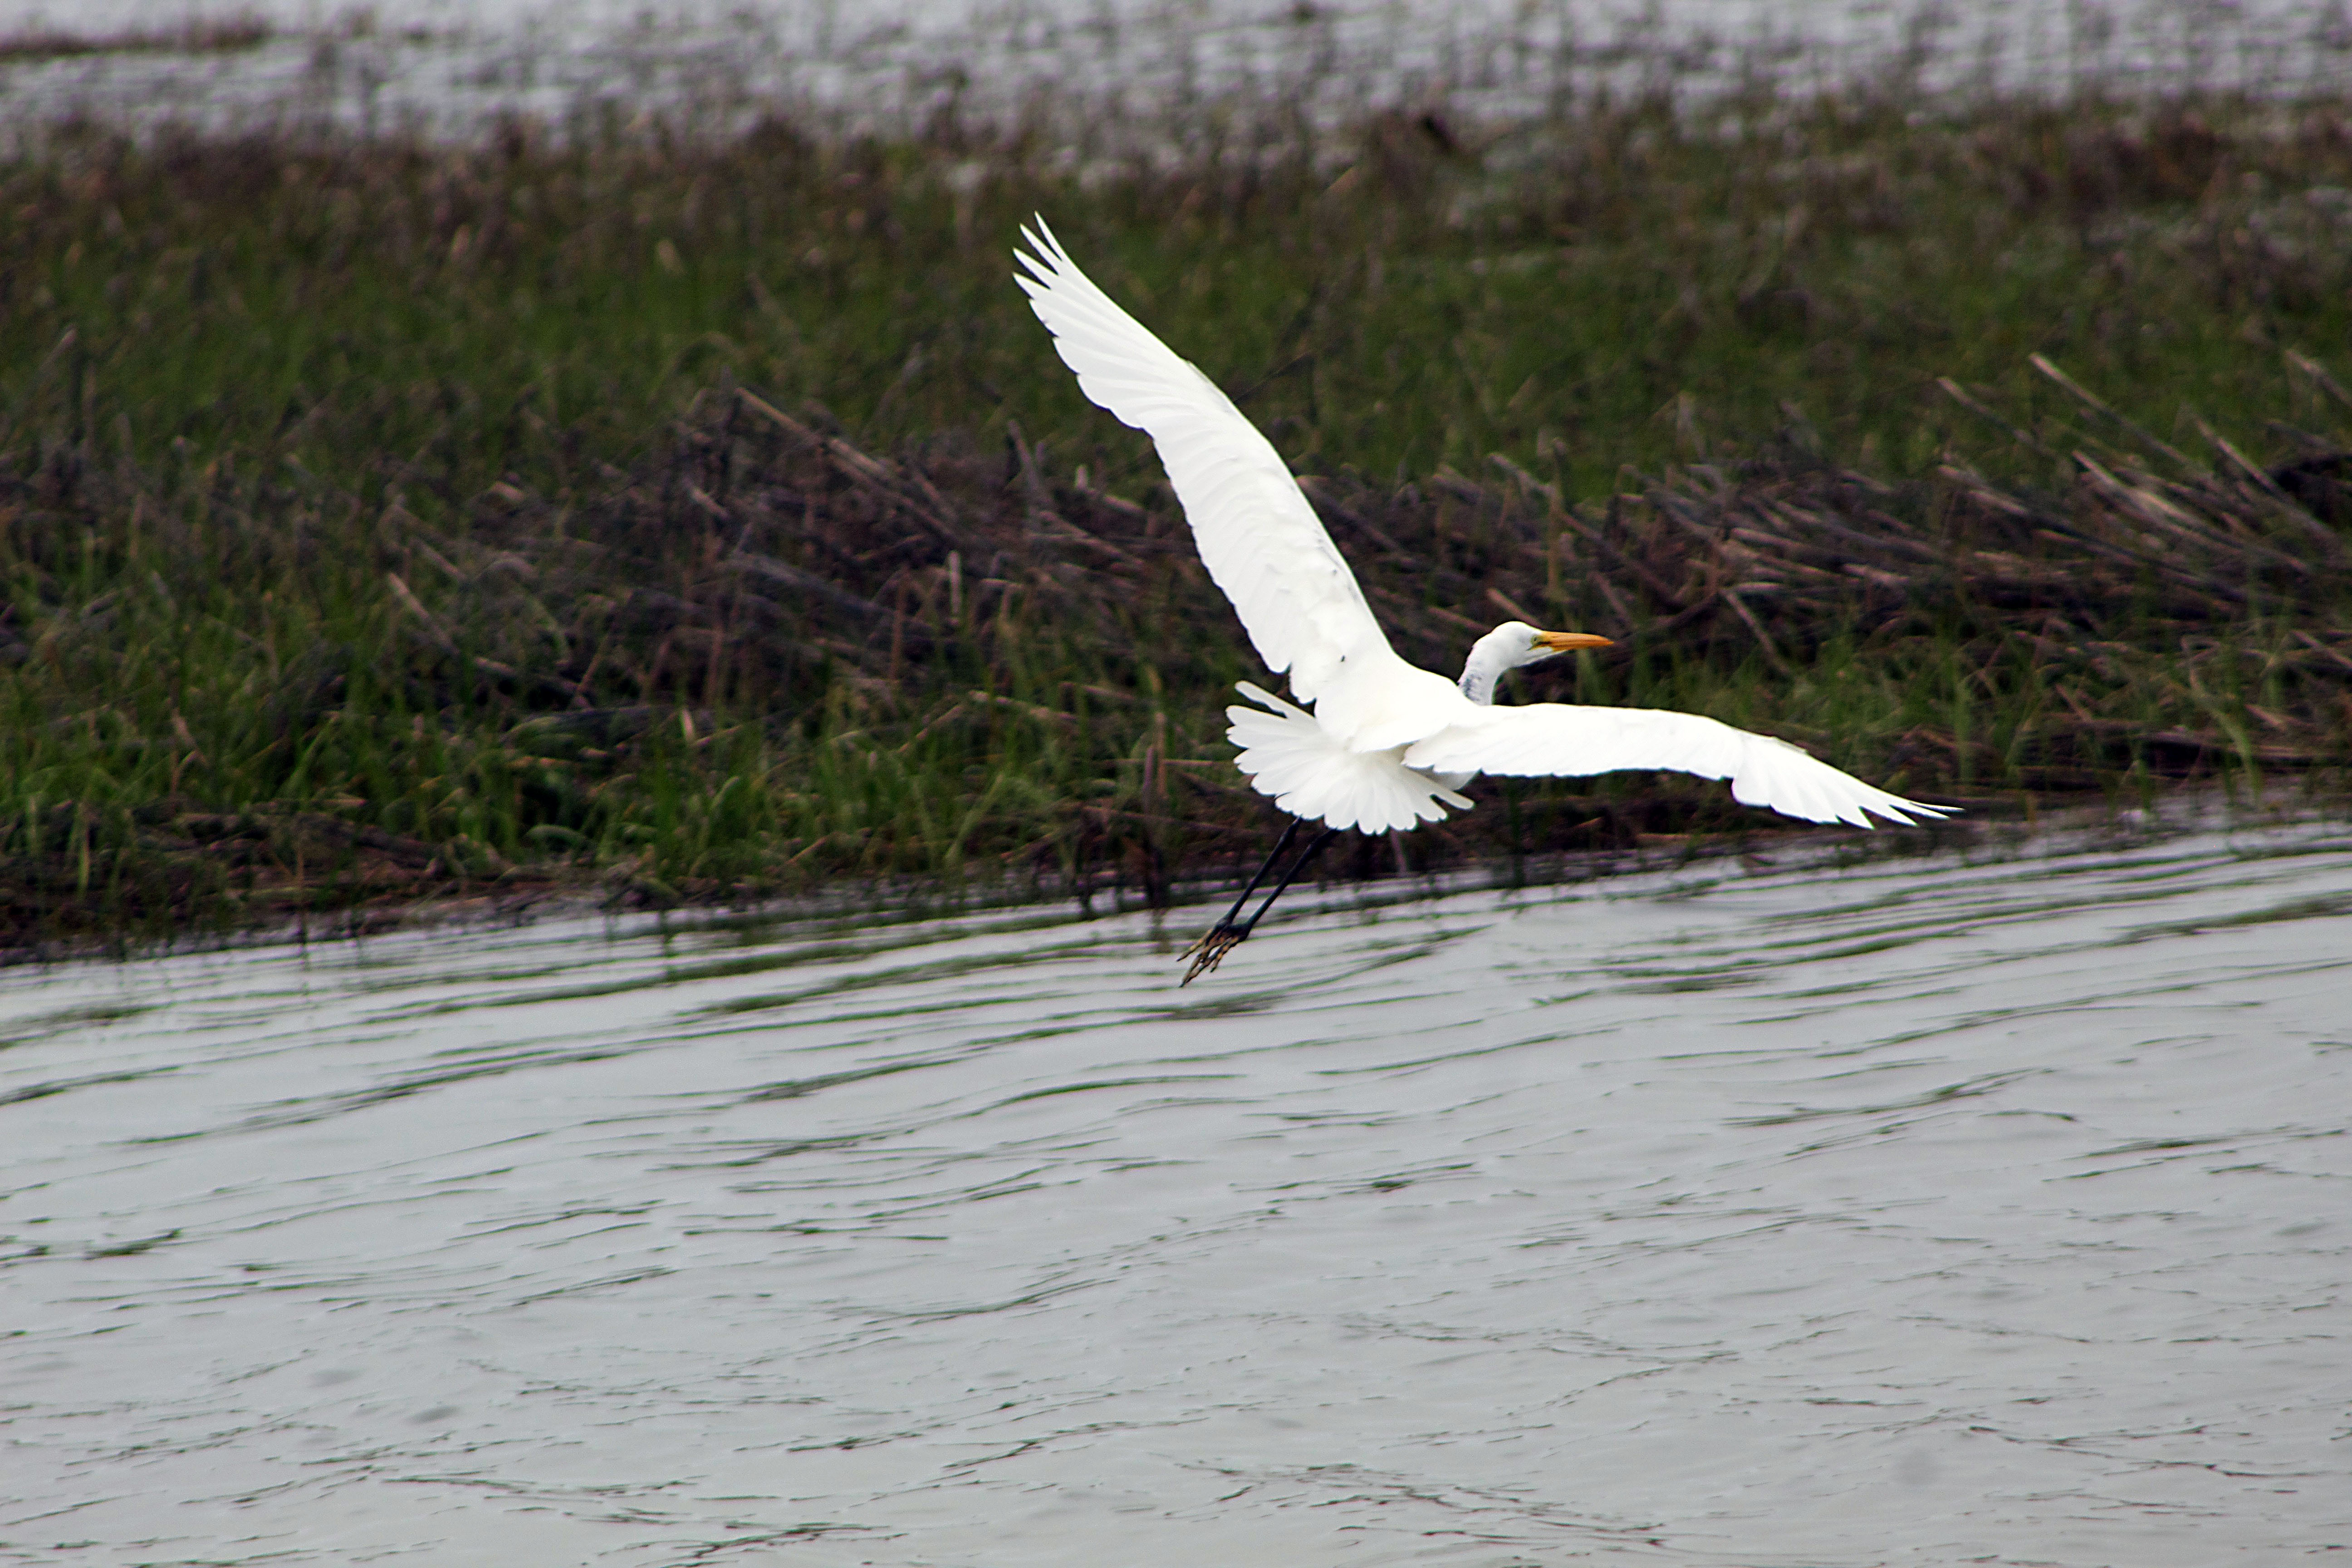 _White heron flight profile weeds background